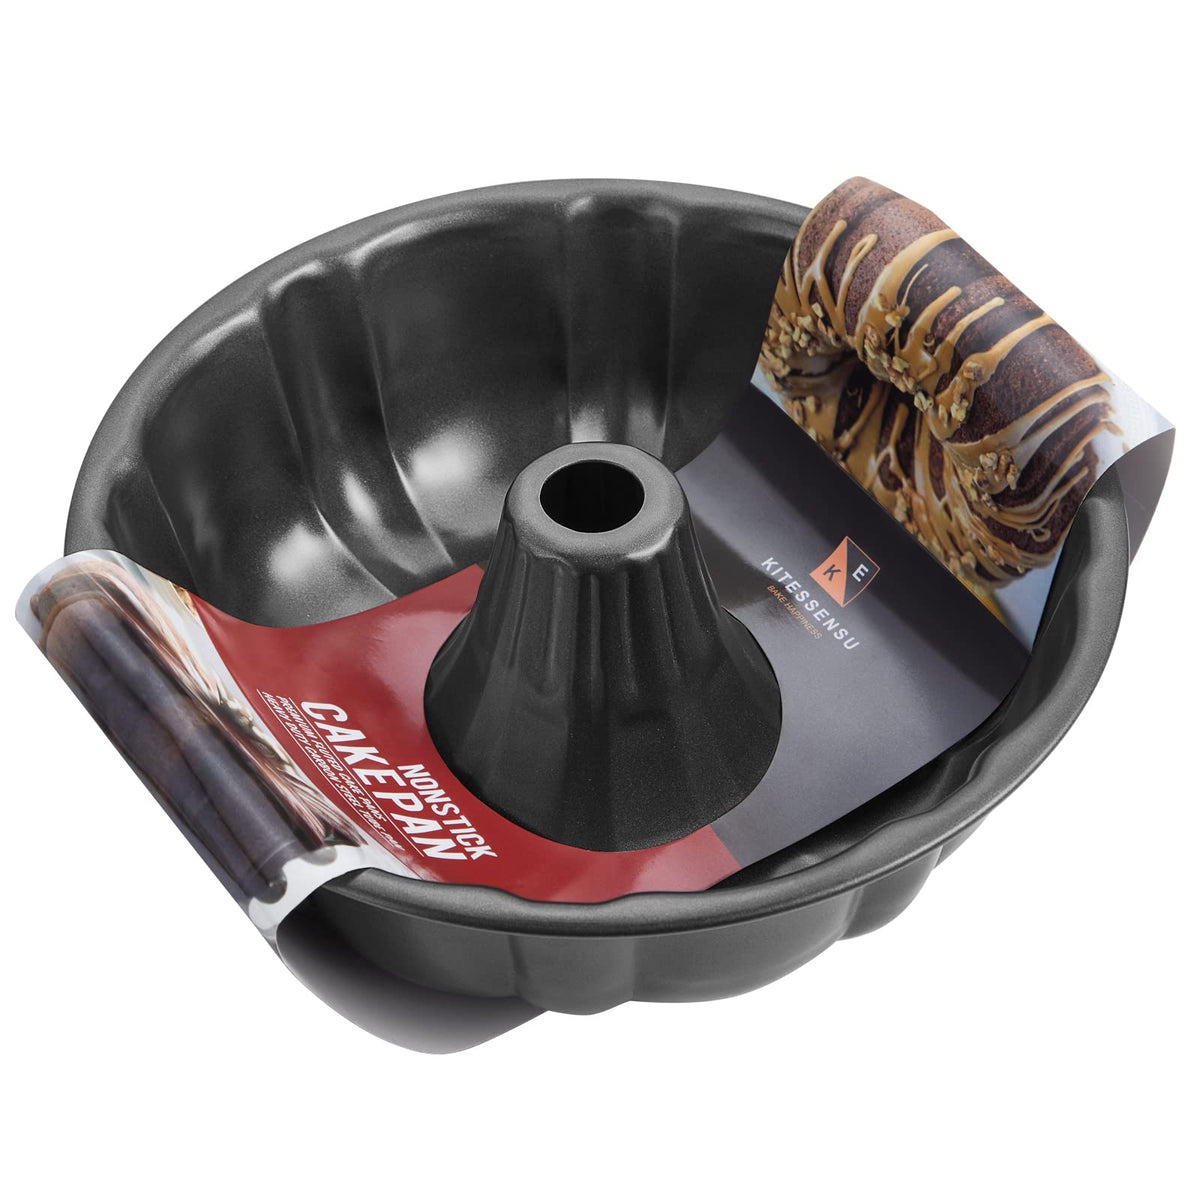 Nonstick Bakeware Set, KITESSENSU 7-Piece Baking Pans Sets with  Round/Square Cake Pan, Cookie Sheet Sets, Roast Cooling Rack, Carbon Steel  Bake-Black